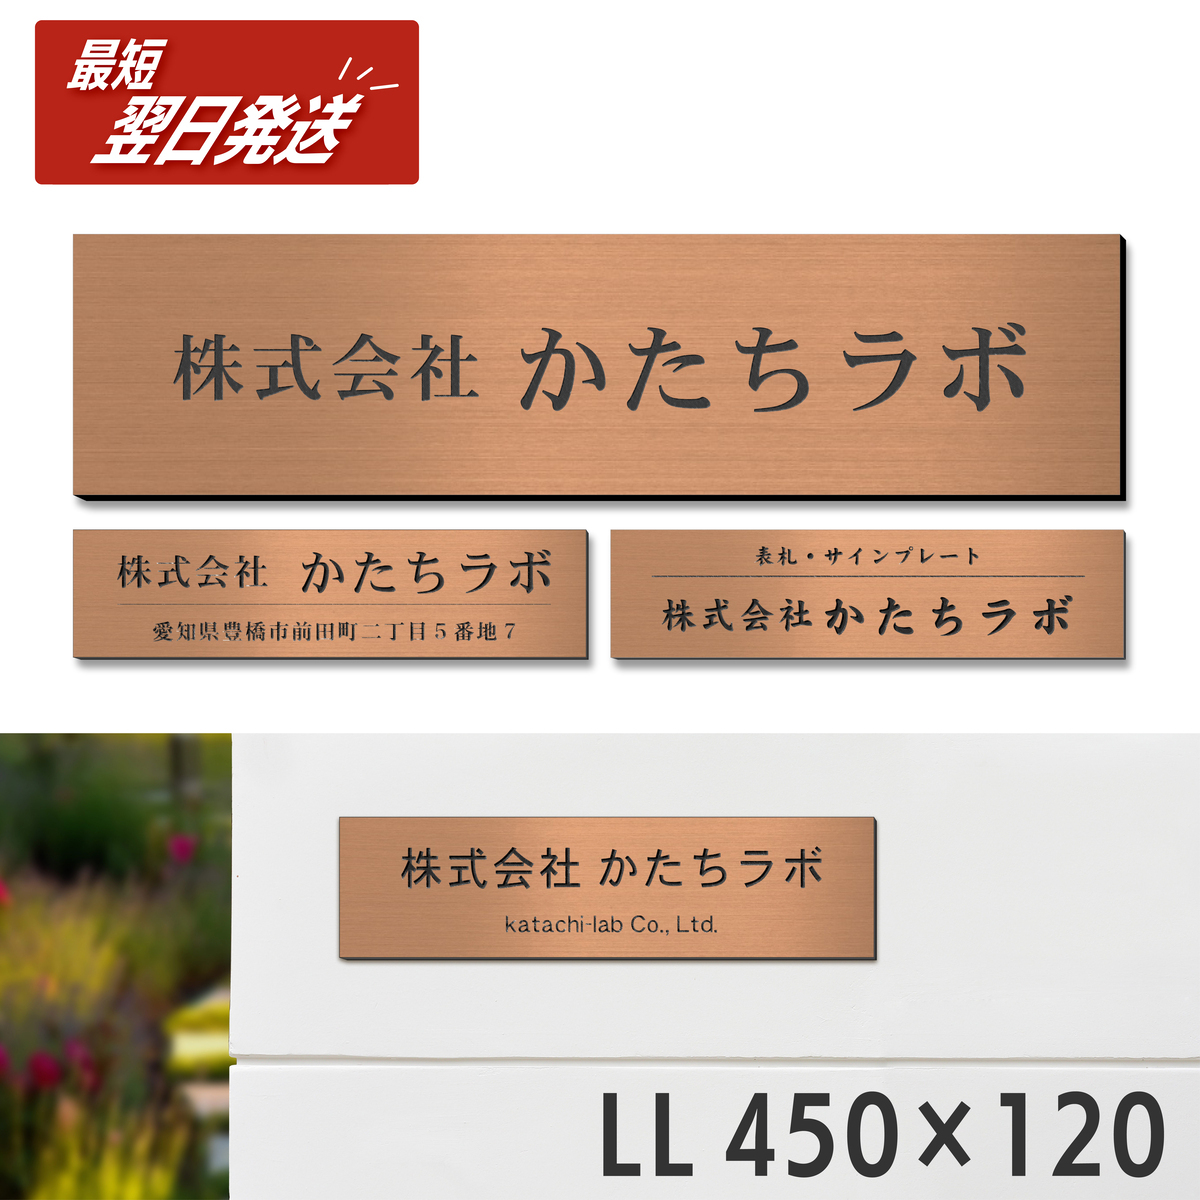 日本製2層アクリル板で作ったオフィス、会社用の表札